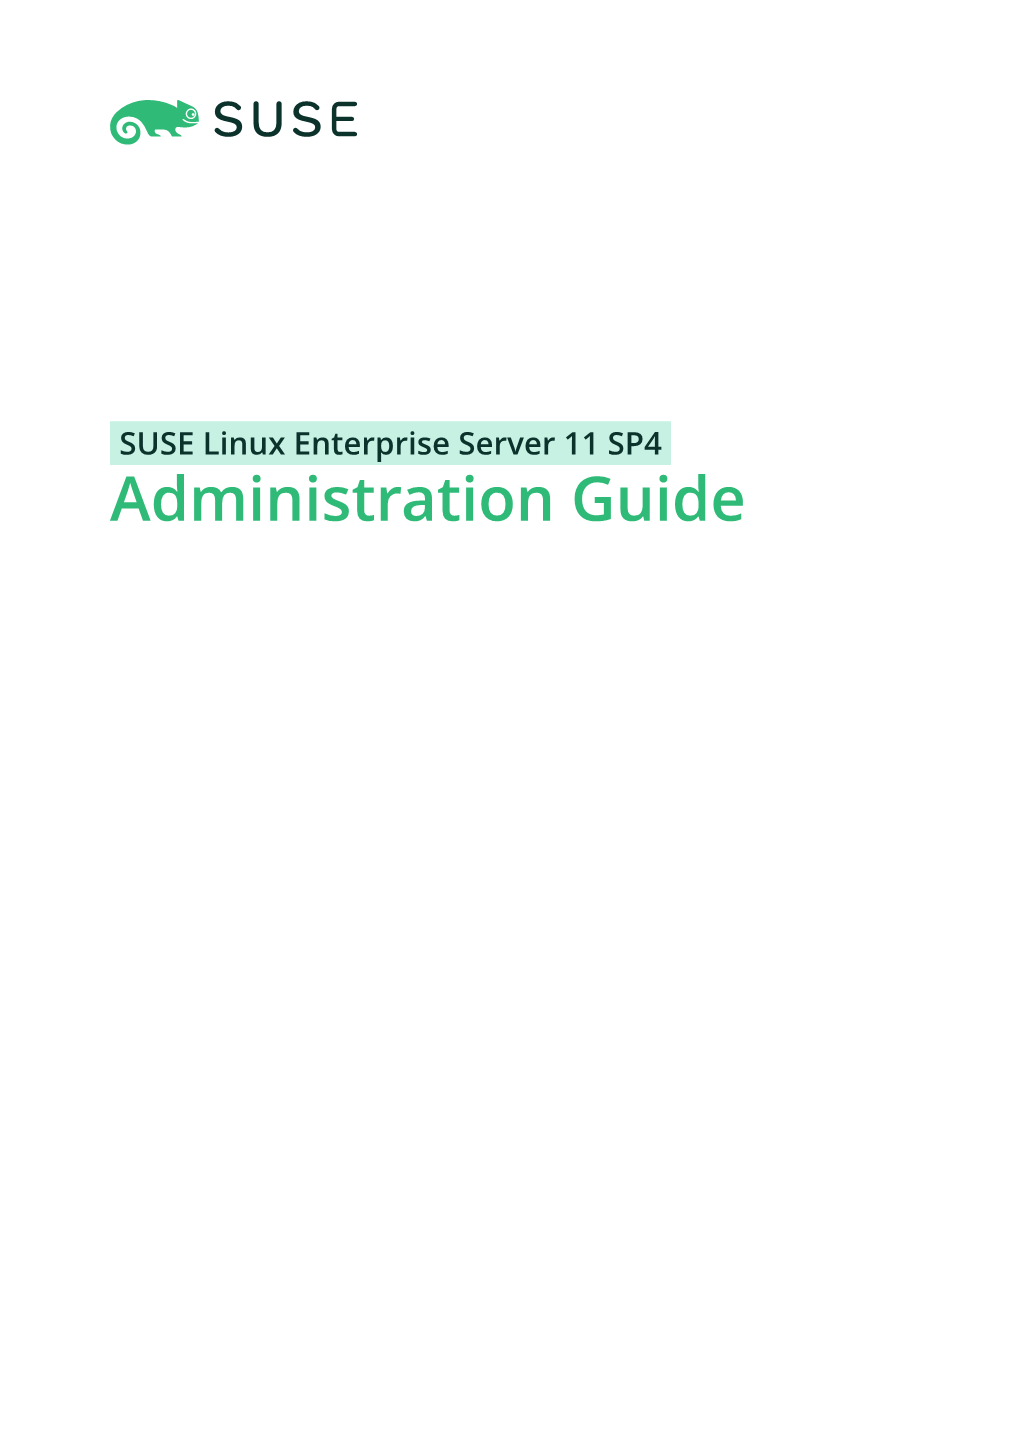 SUSE Linux Enterprise Server 11 SP4 Administration Guide Administration Guide SUSE Linux Enterprise Server 11 SP4